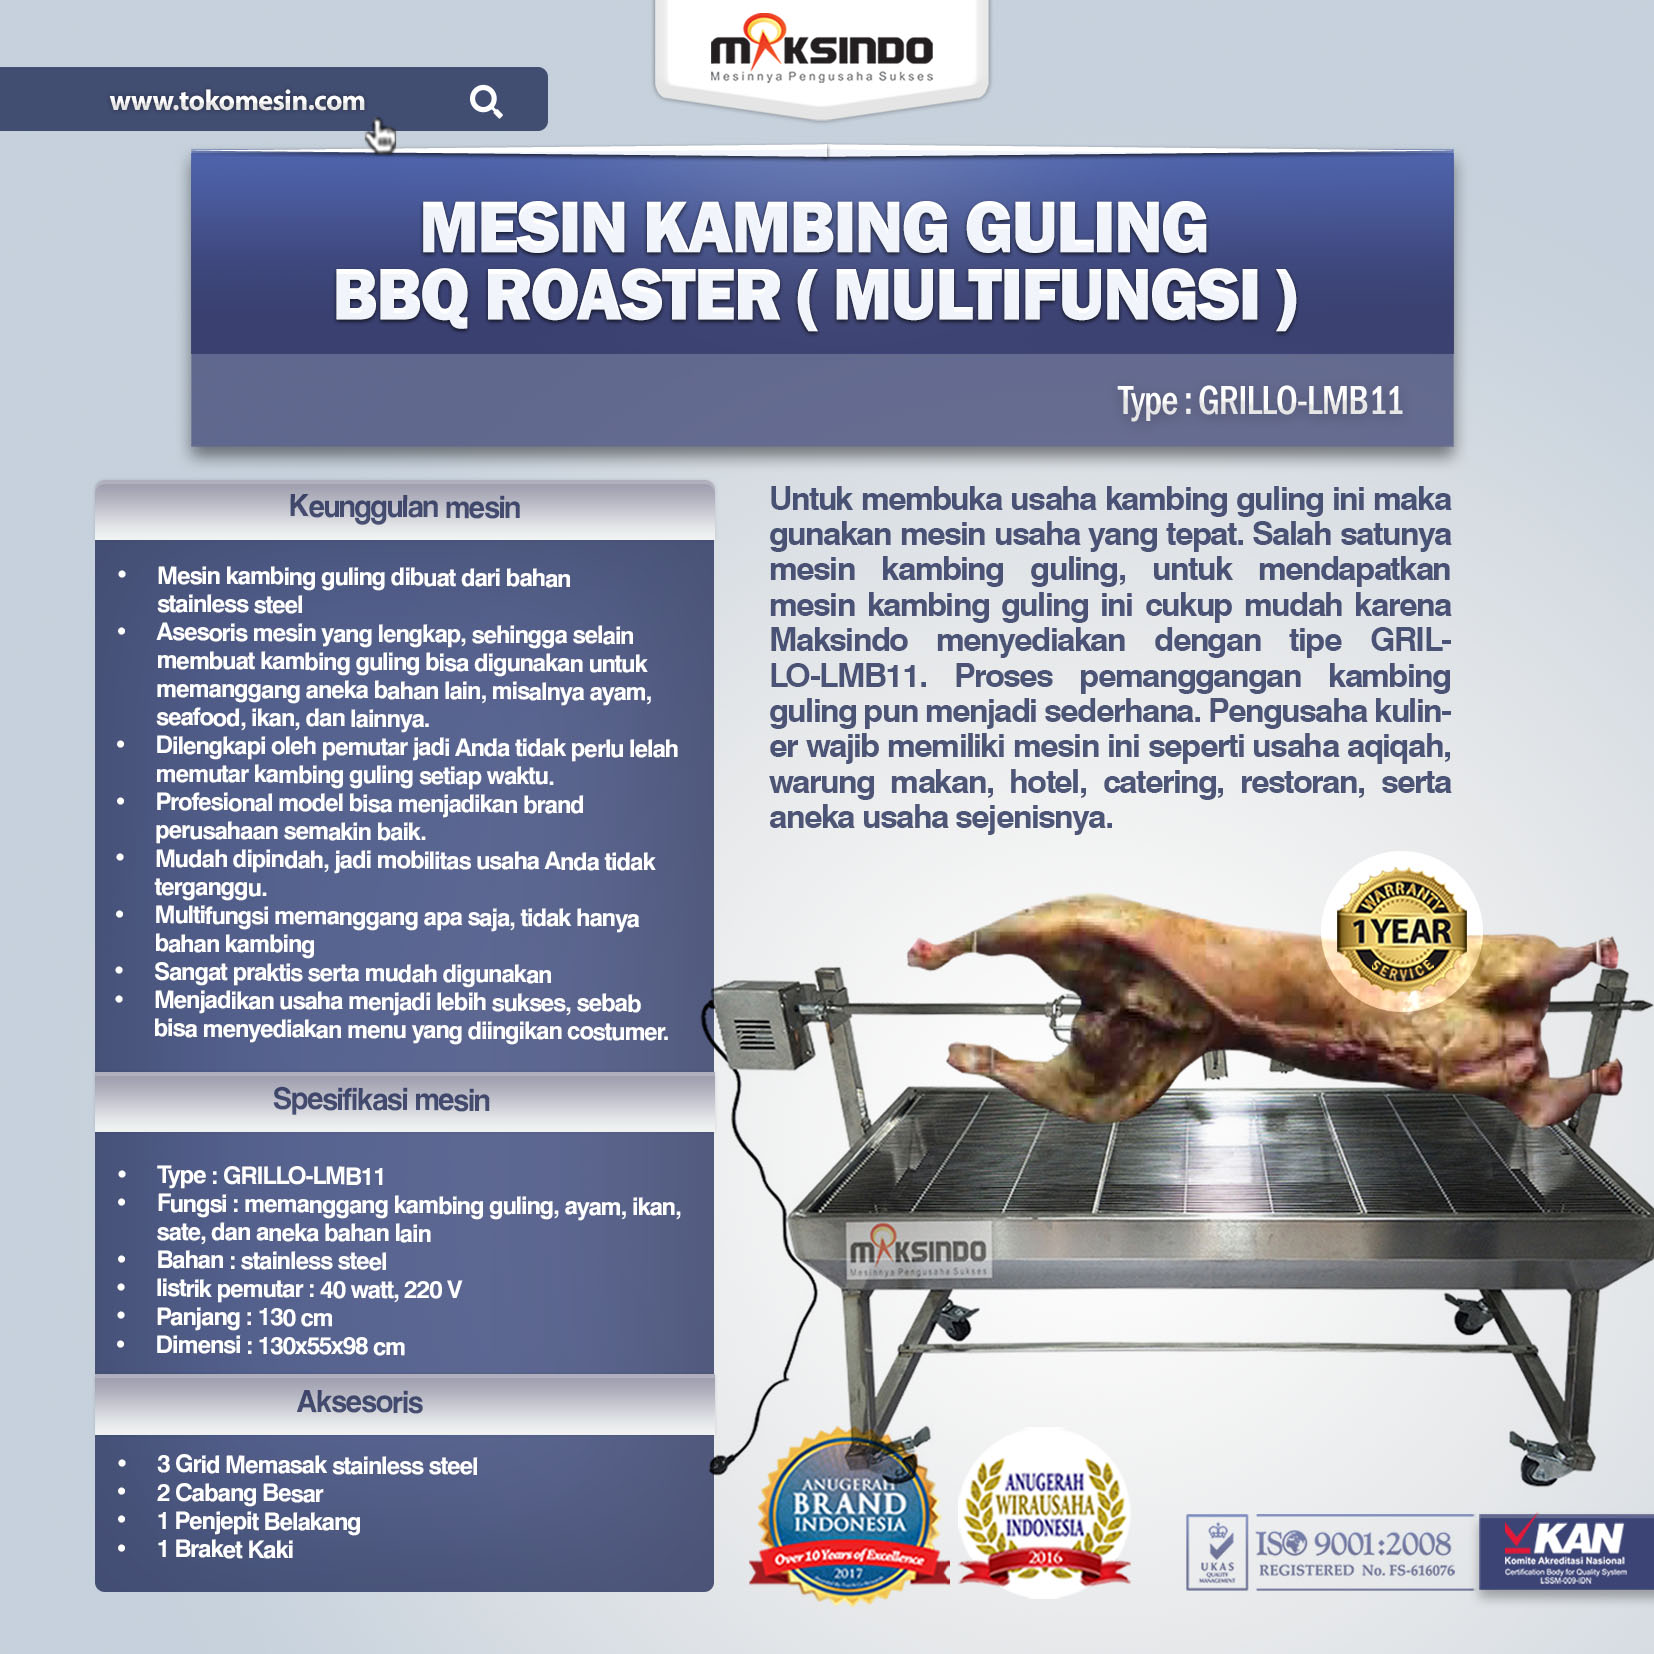 Jual Mesin Kambing Guling BBQ Roaster (GRILLO-LMB11) di Medan